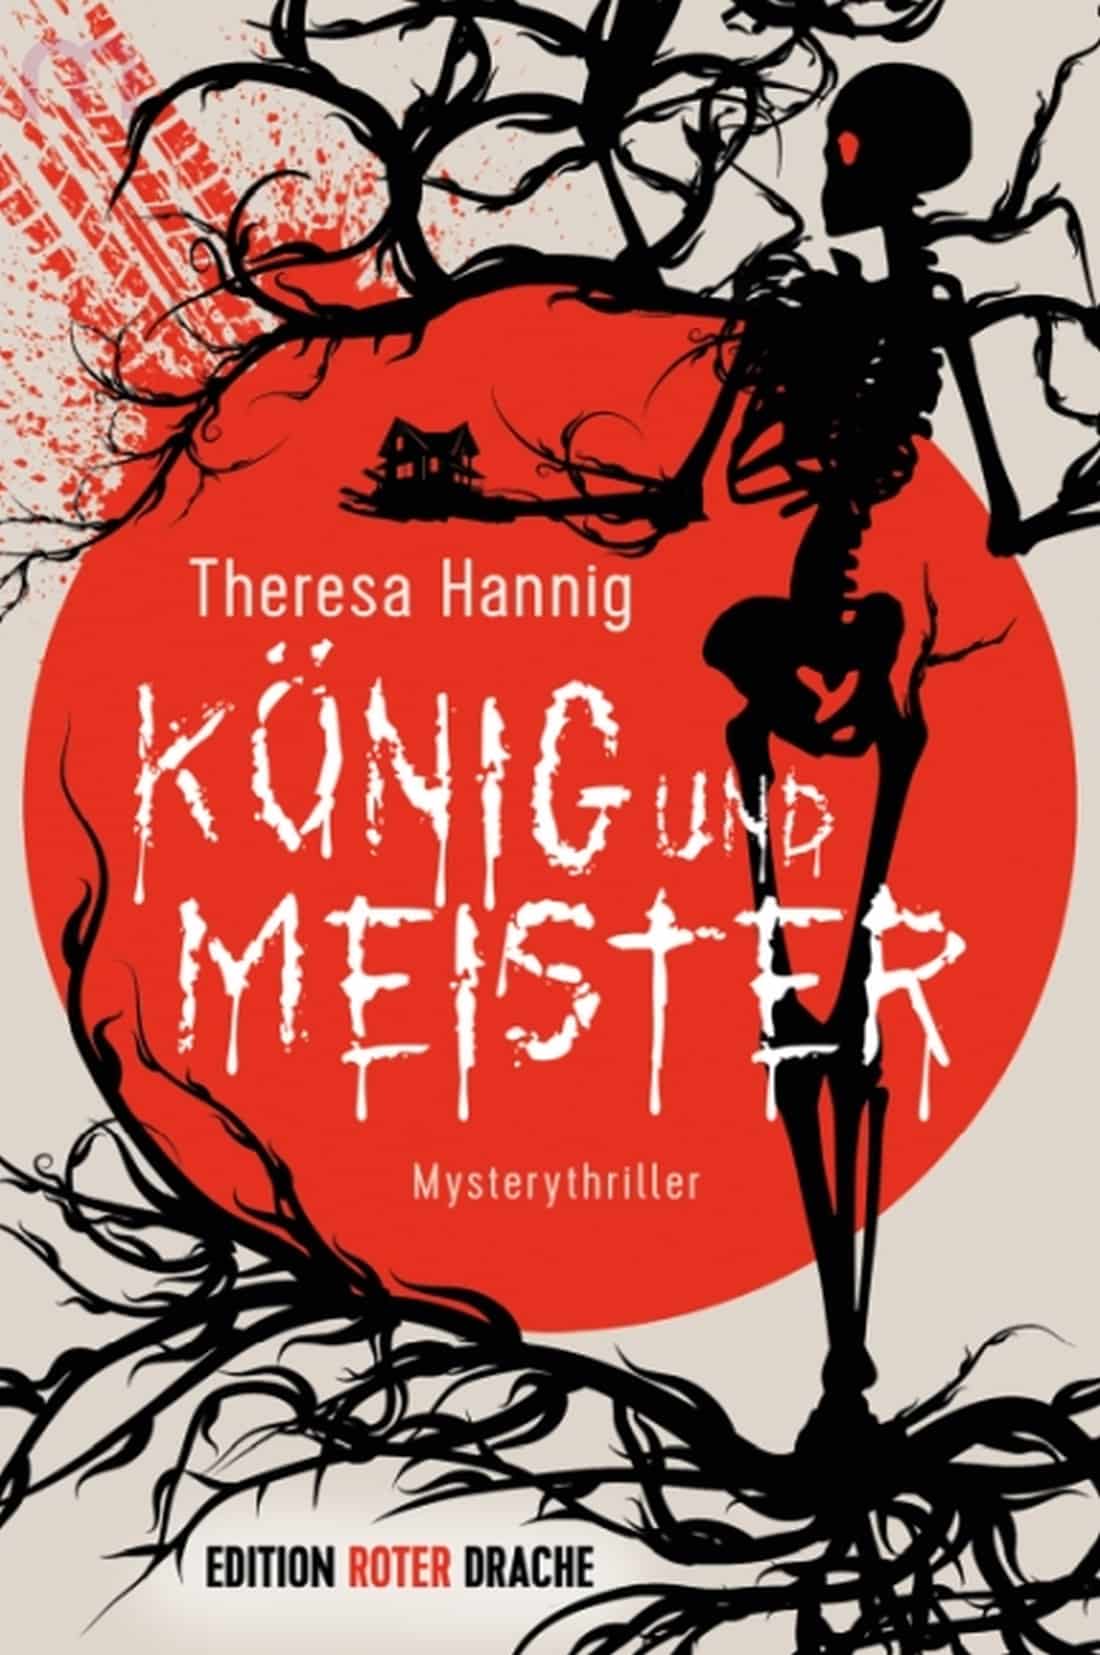 LITL011 [Interview-Podcast] über das Buch: König und Meister mit Theresa Hannig